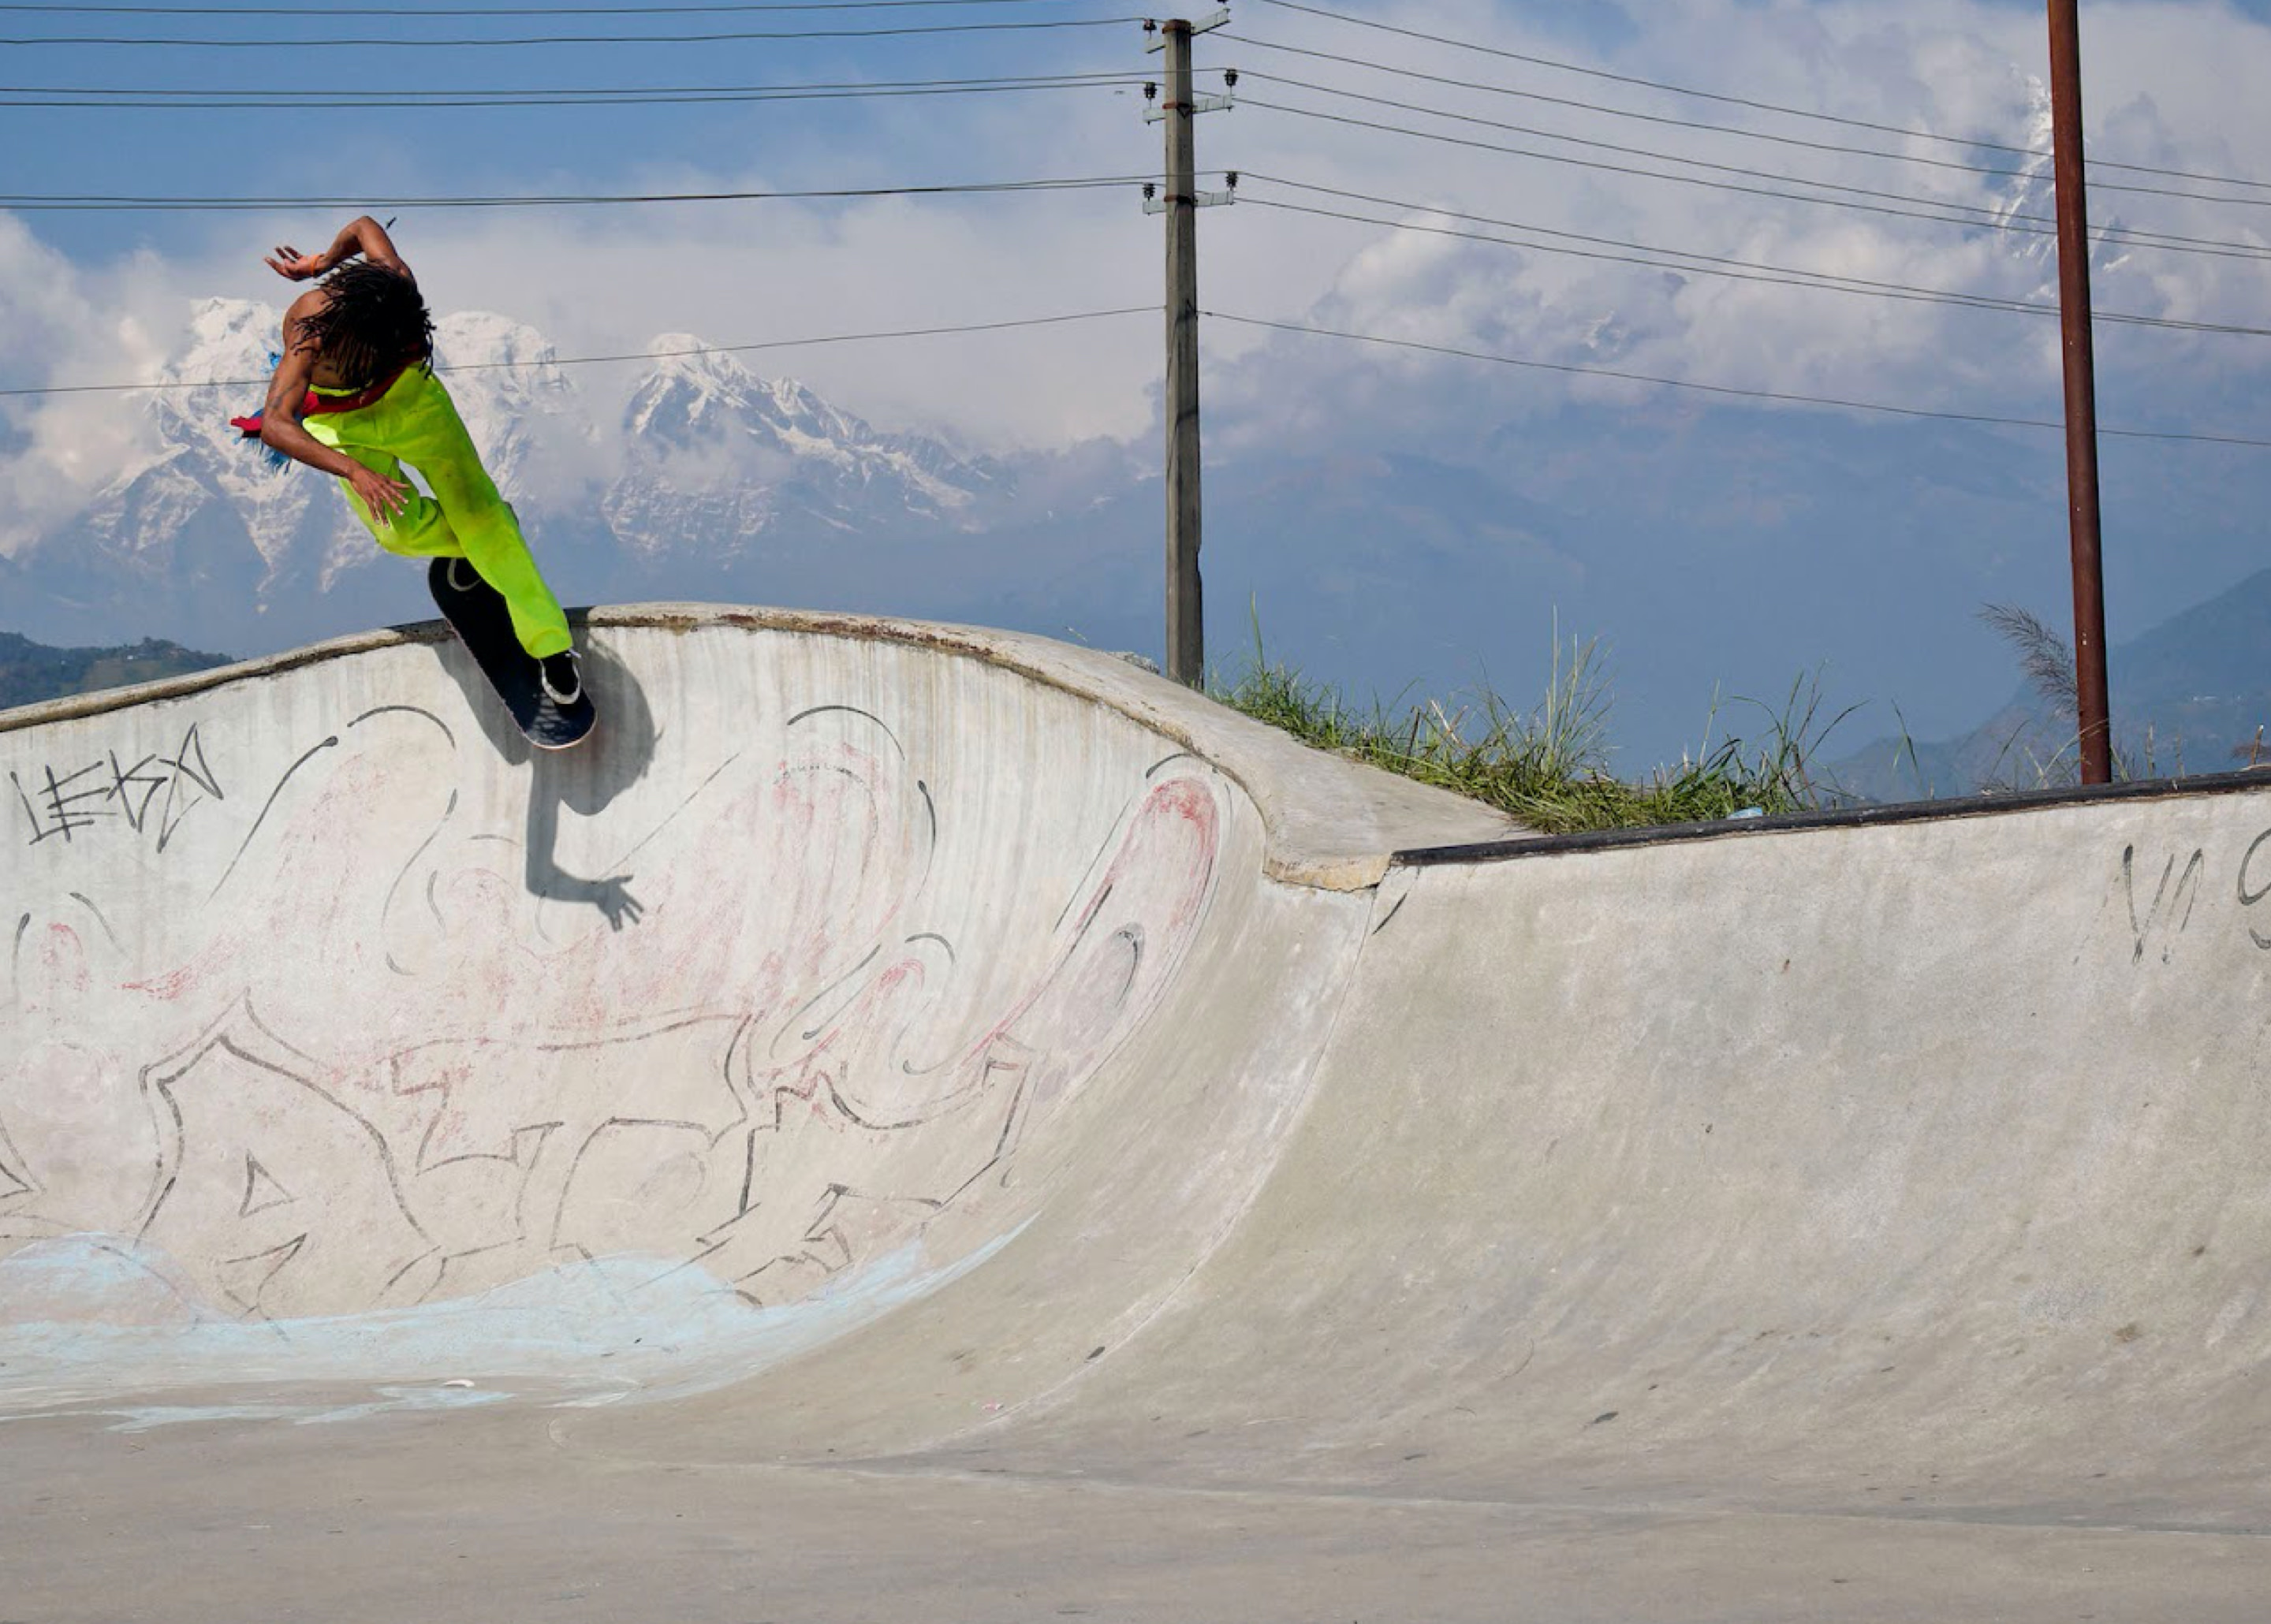 A skateboarder skateboarding on a ramp in Nepal.